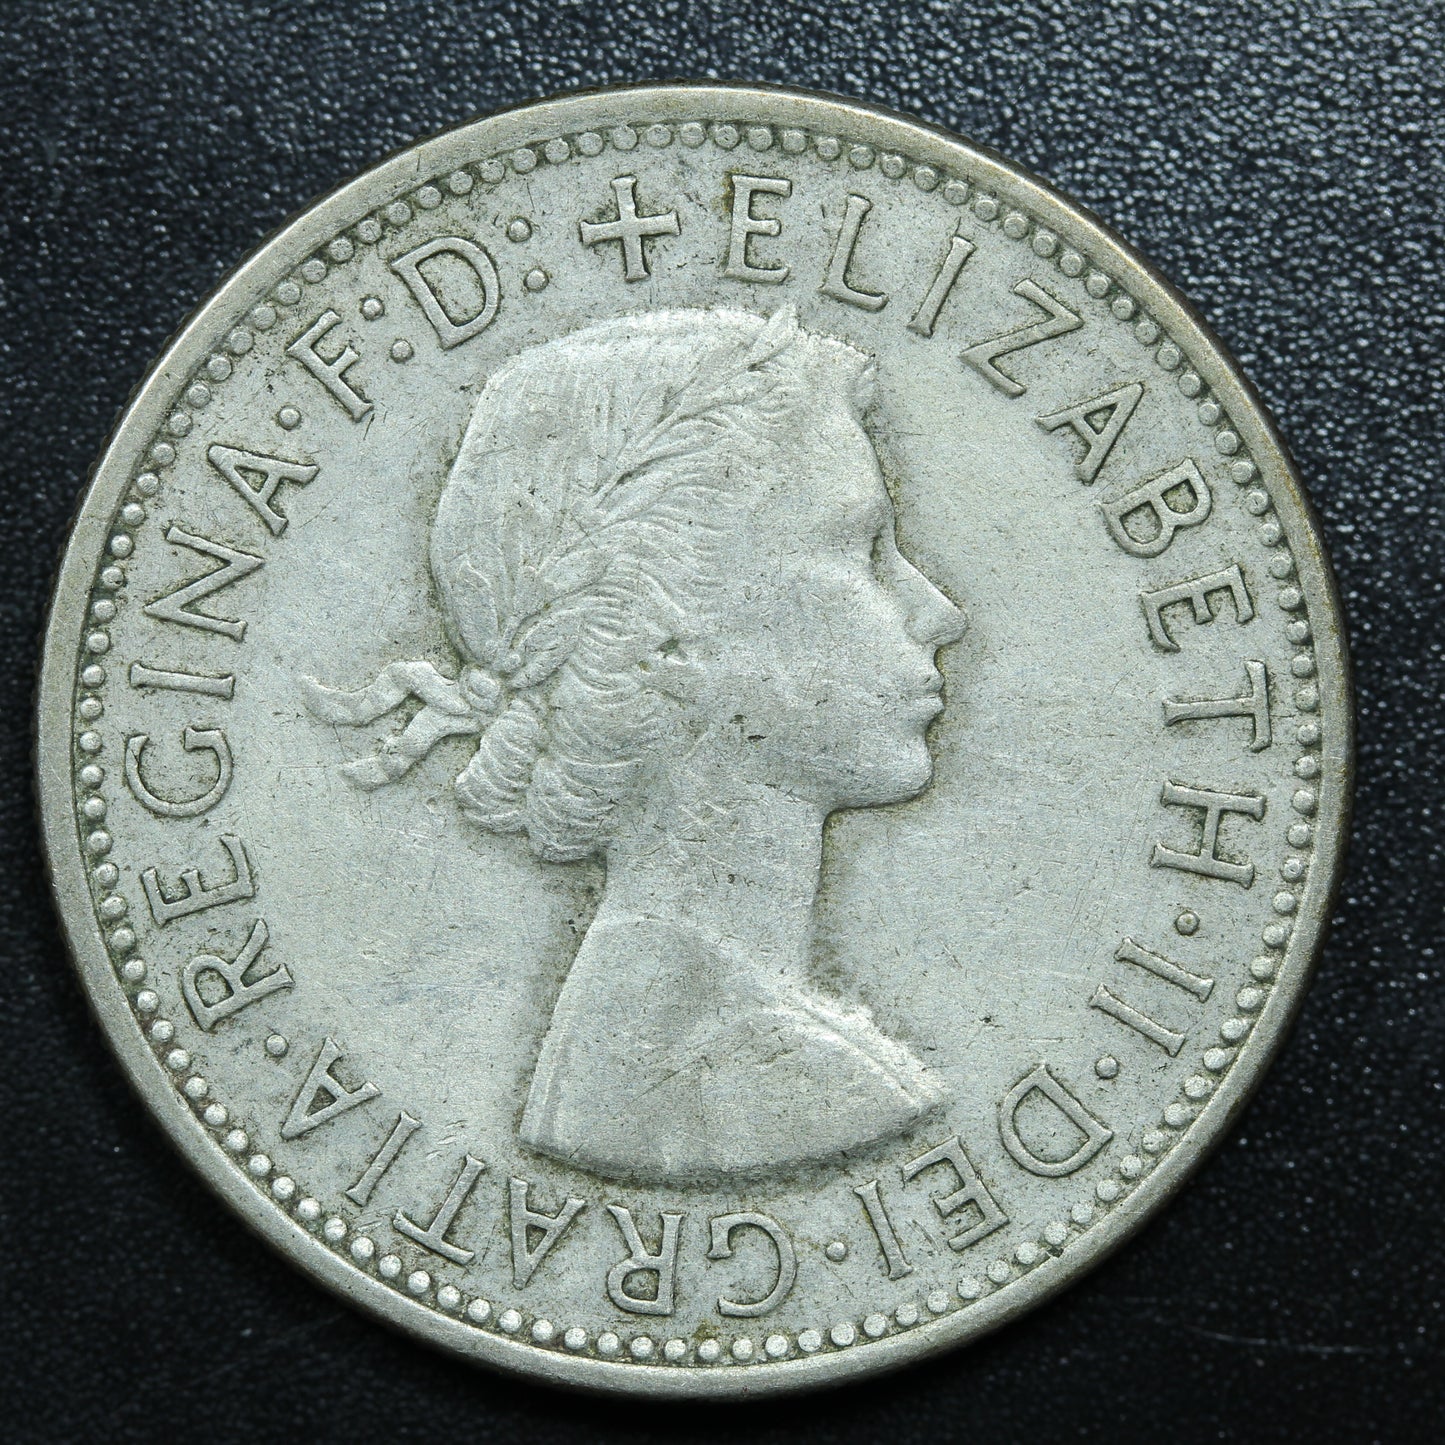 1954 Australia 1 Florin Silver Coin KM# 55